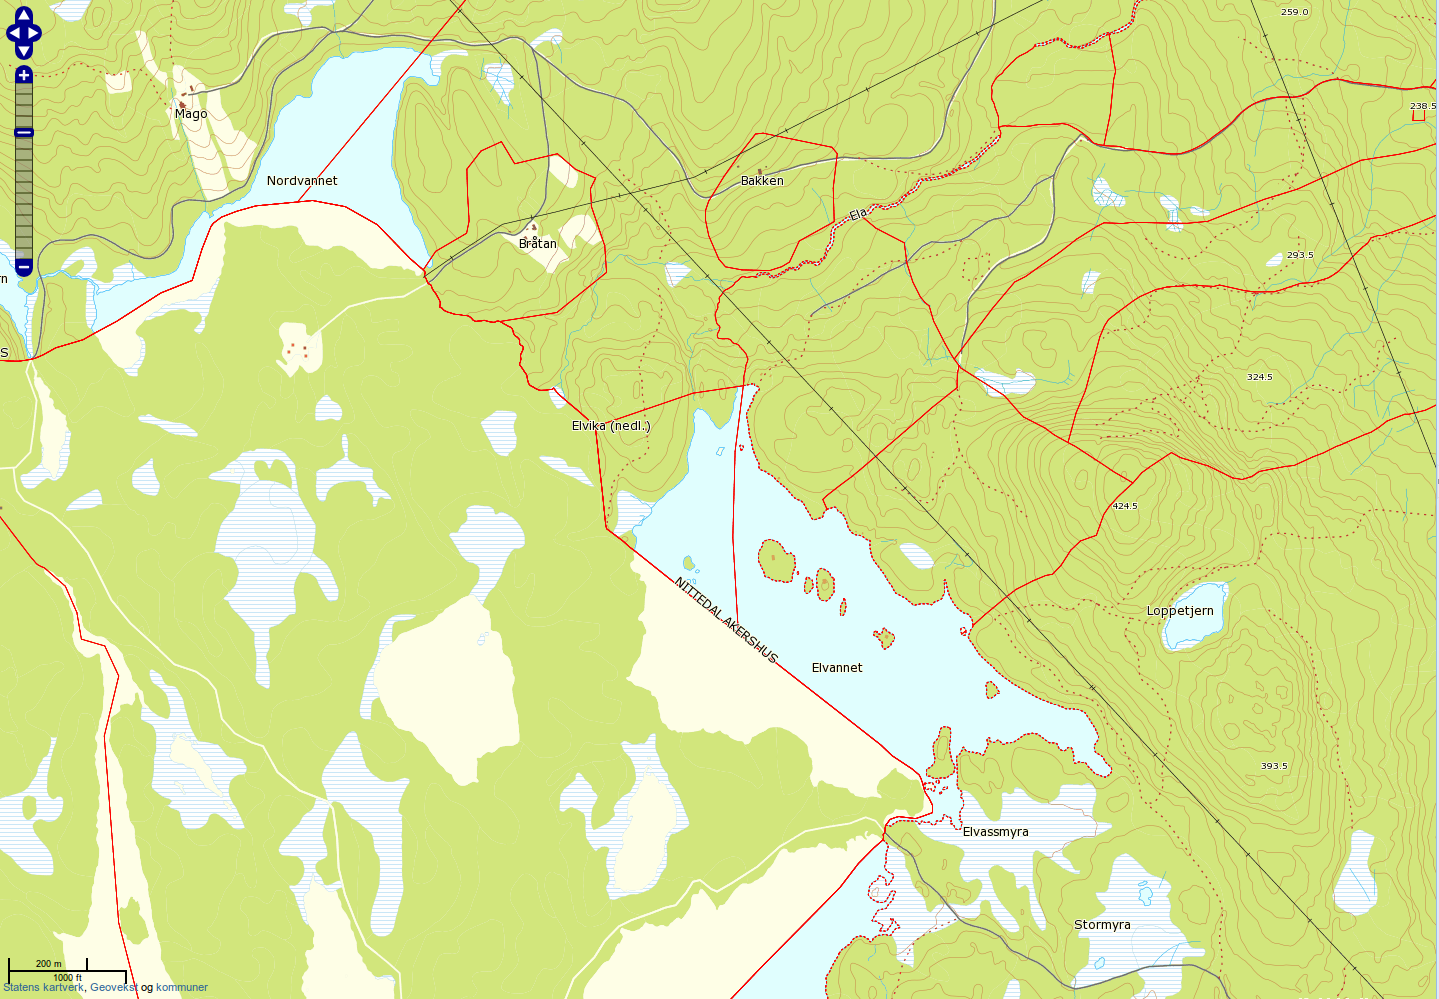 Norgeskart mangler mye detaljer i Oslo Kommune.